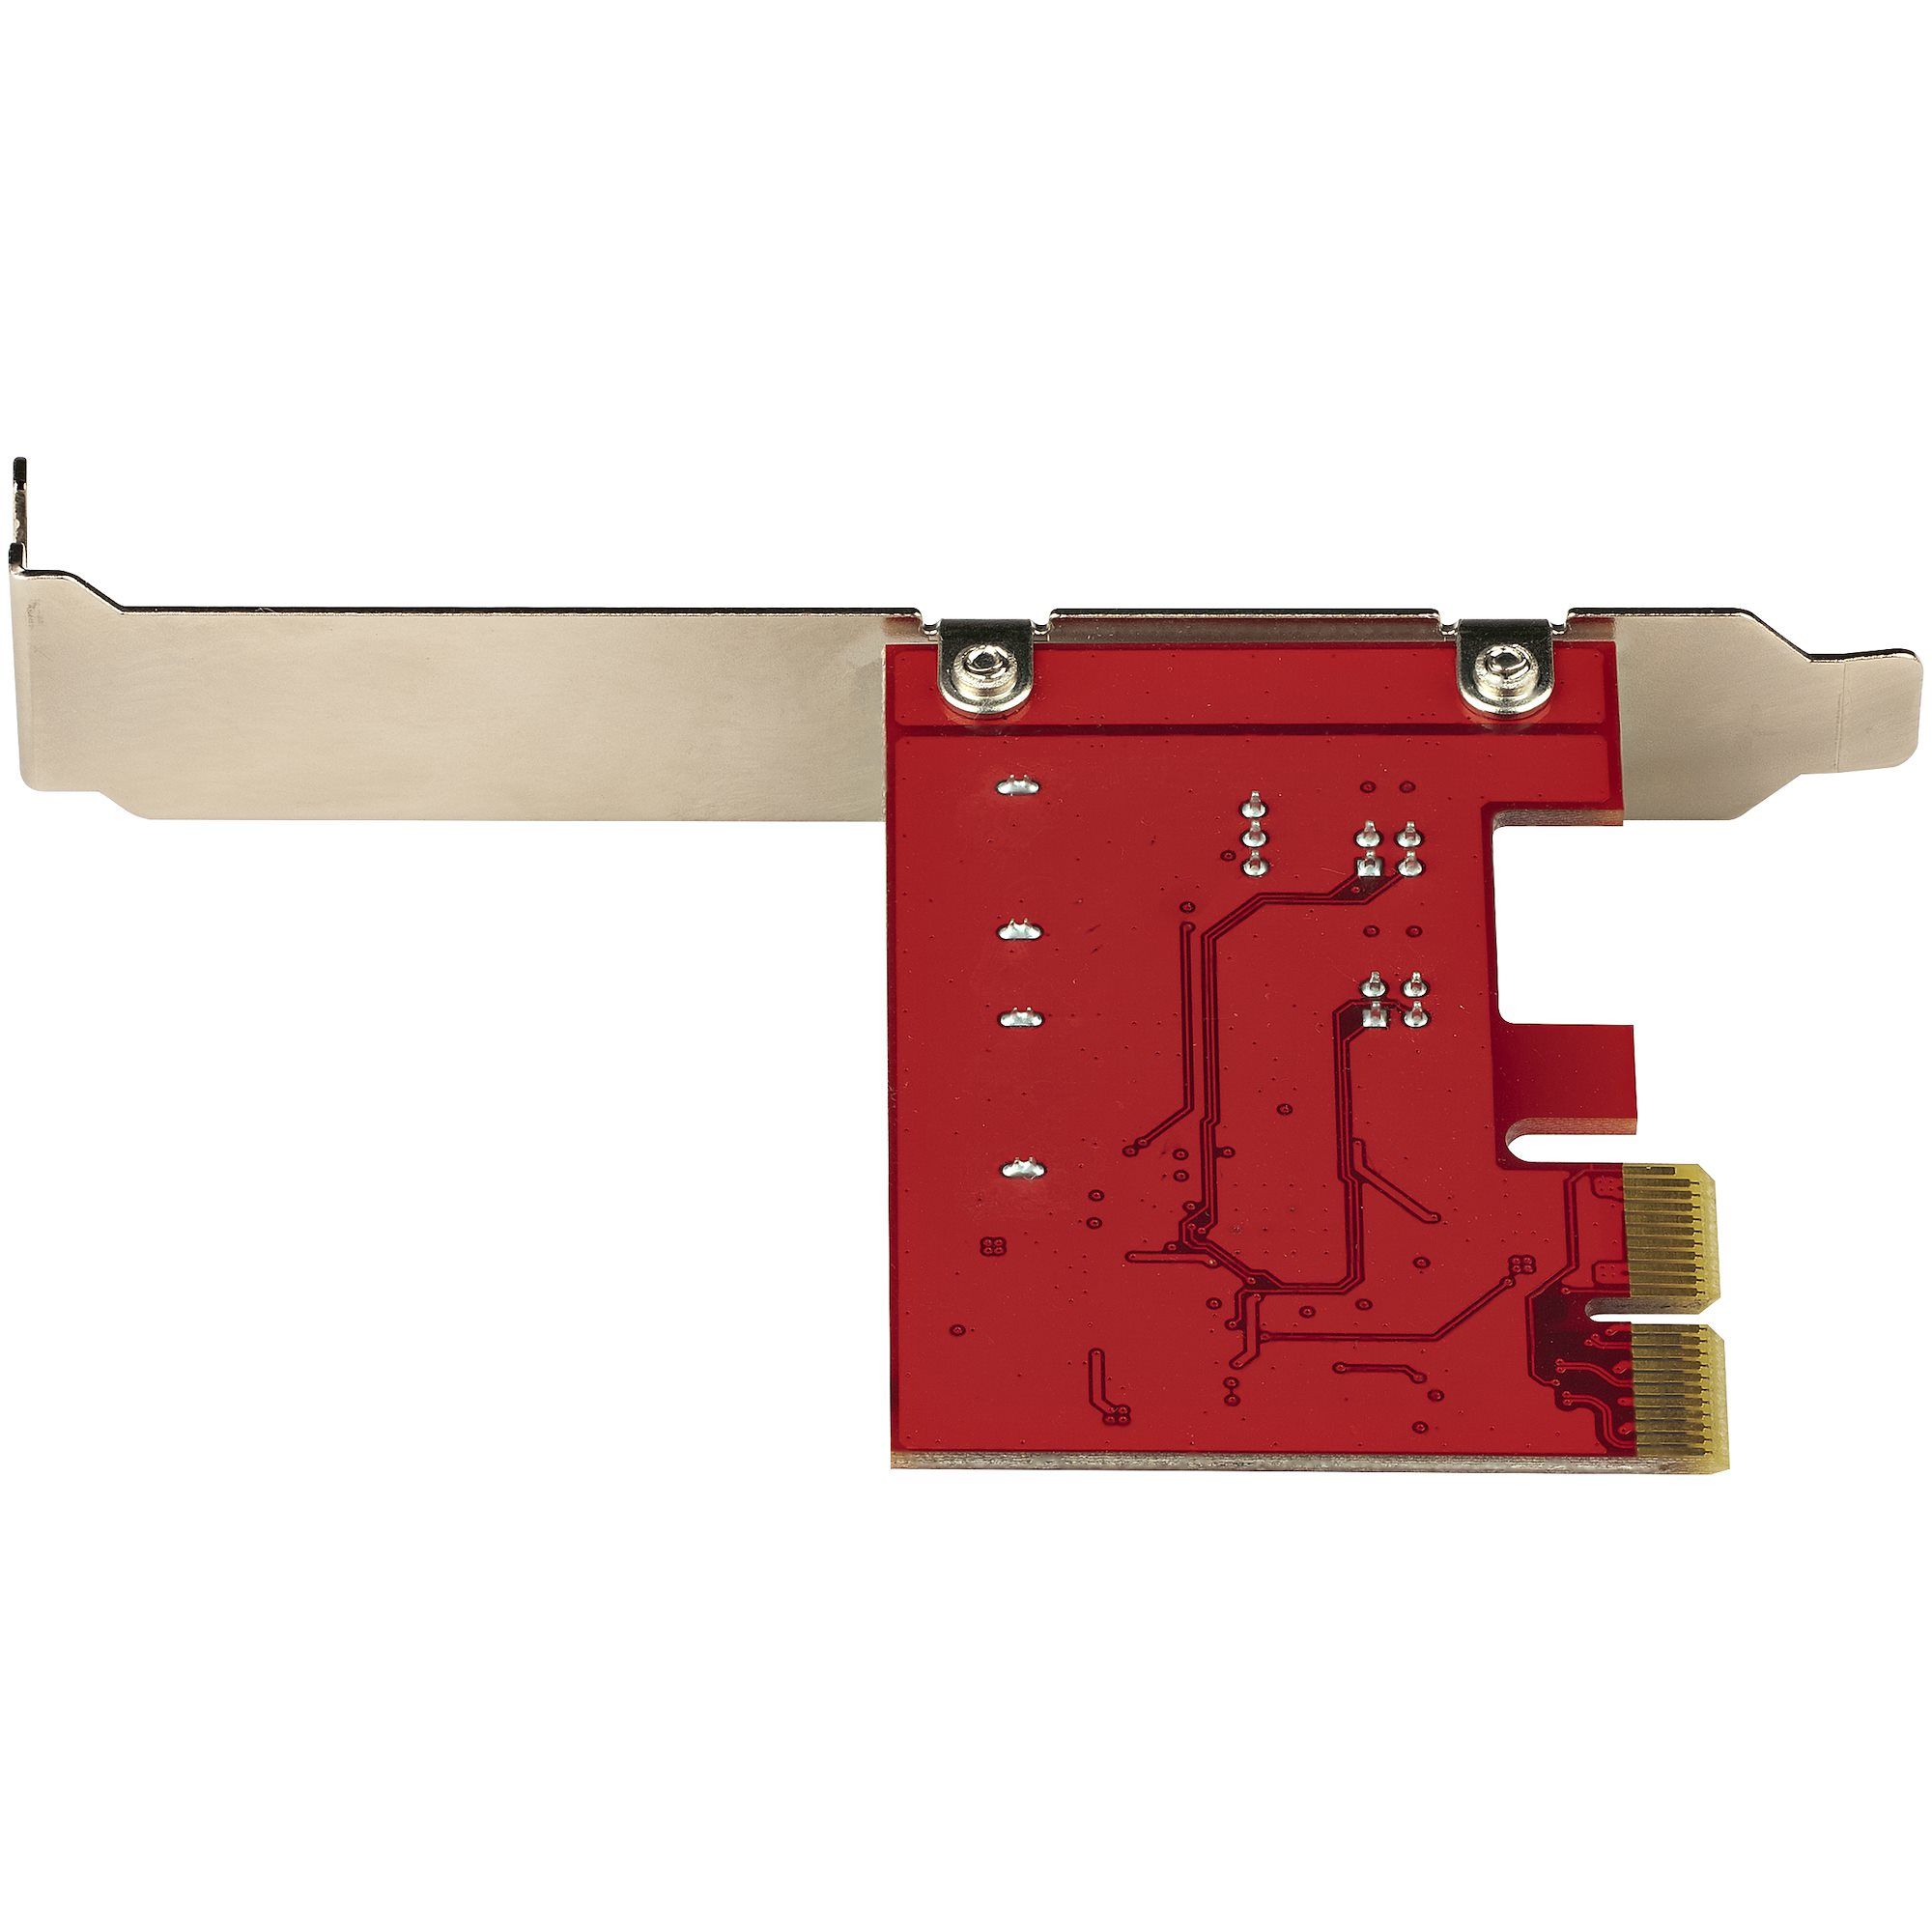 SATA III RAID PCIE CARD 2PT/._5